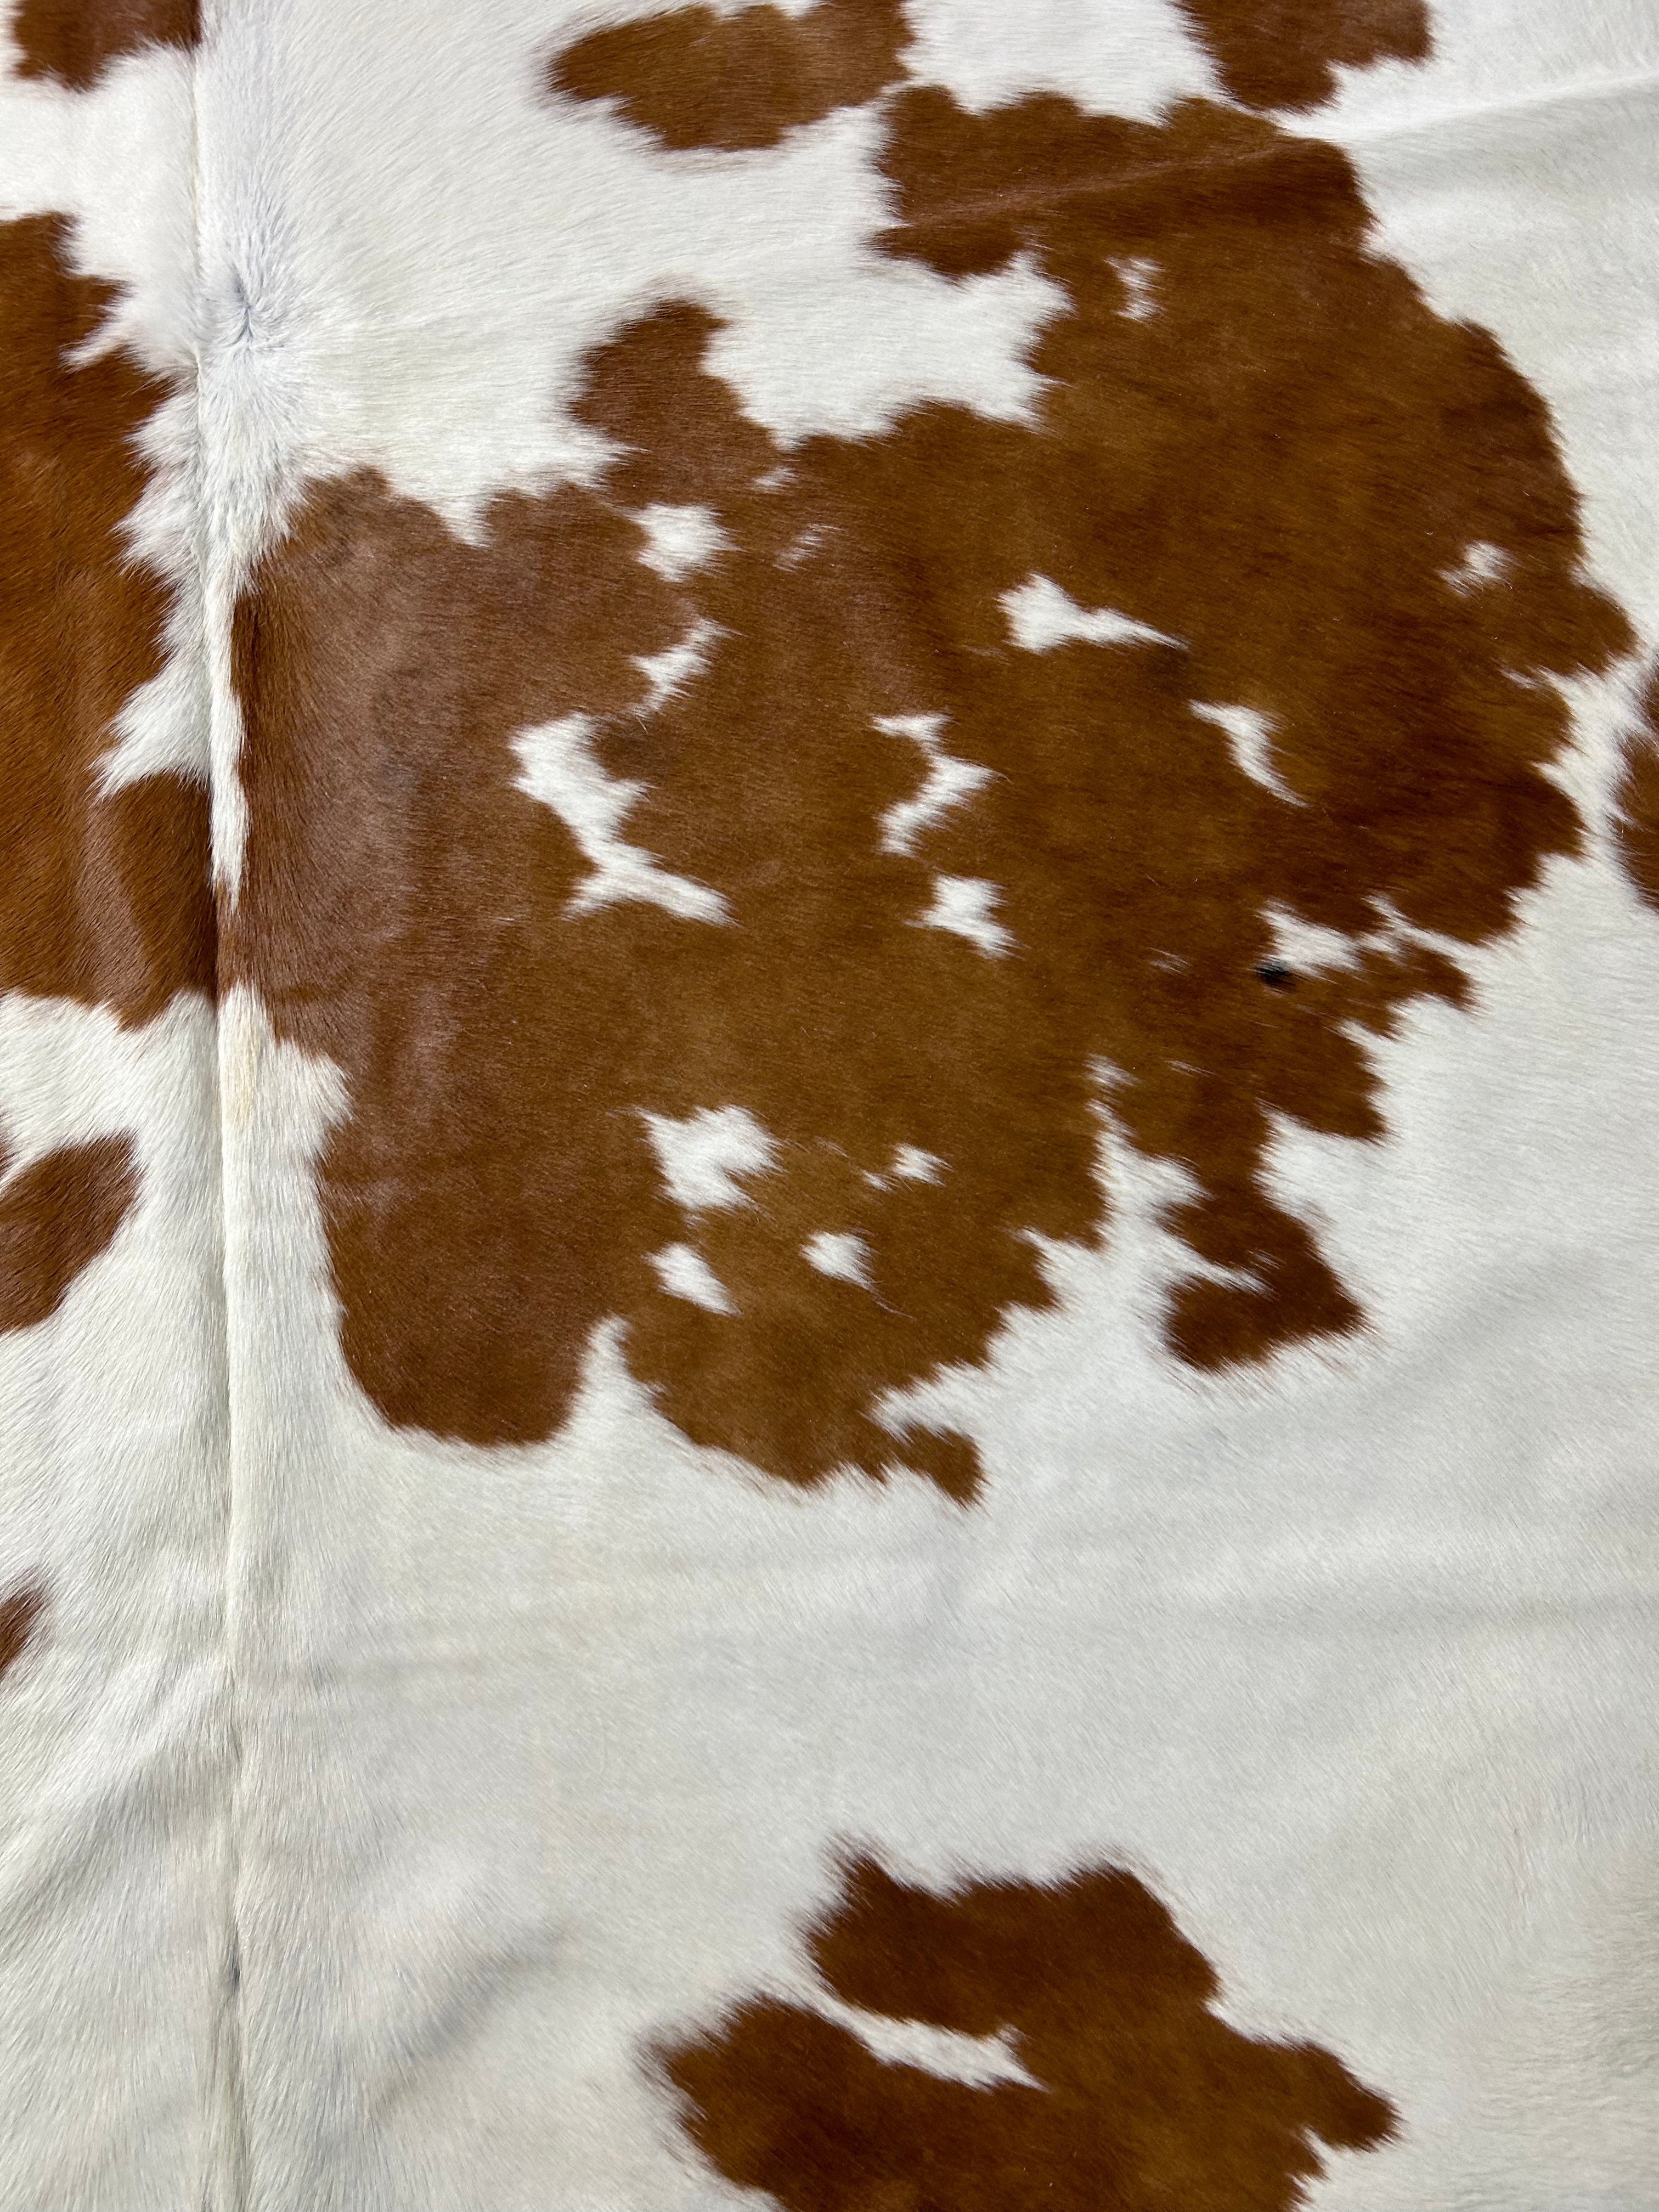 Brown & White Cowhide Rug Size: 7x6.2 feet M-1644